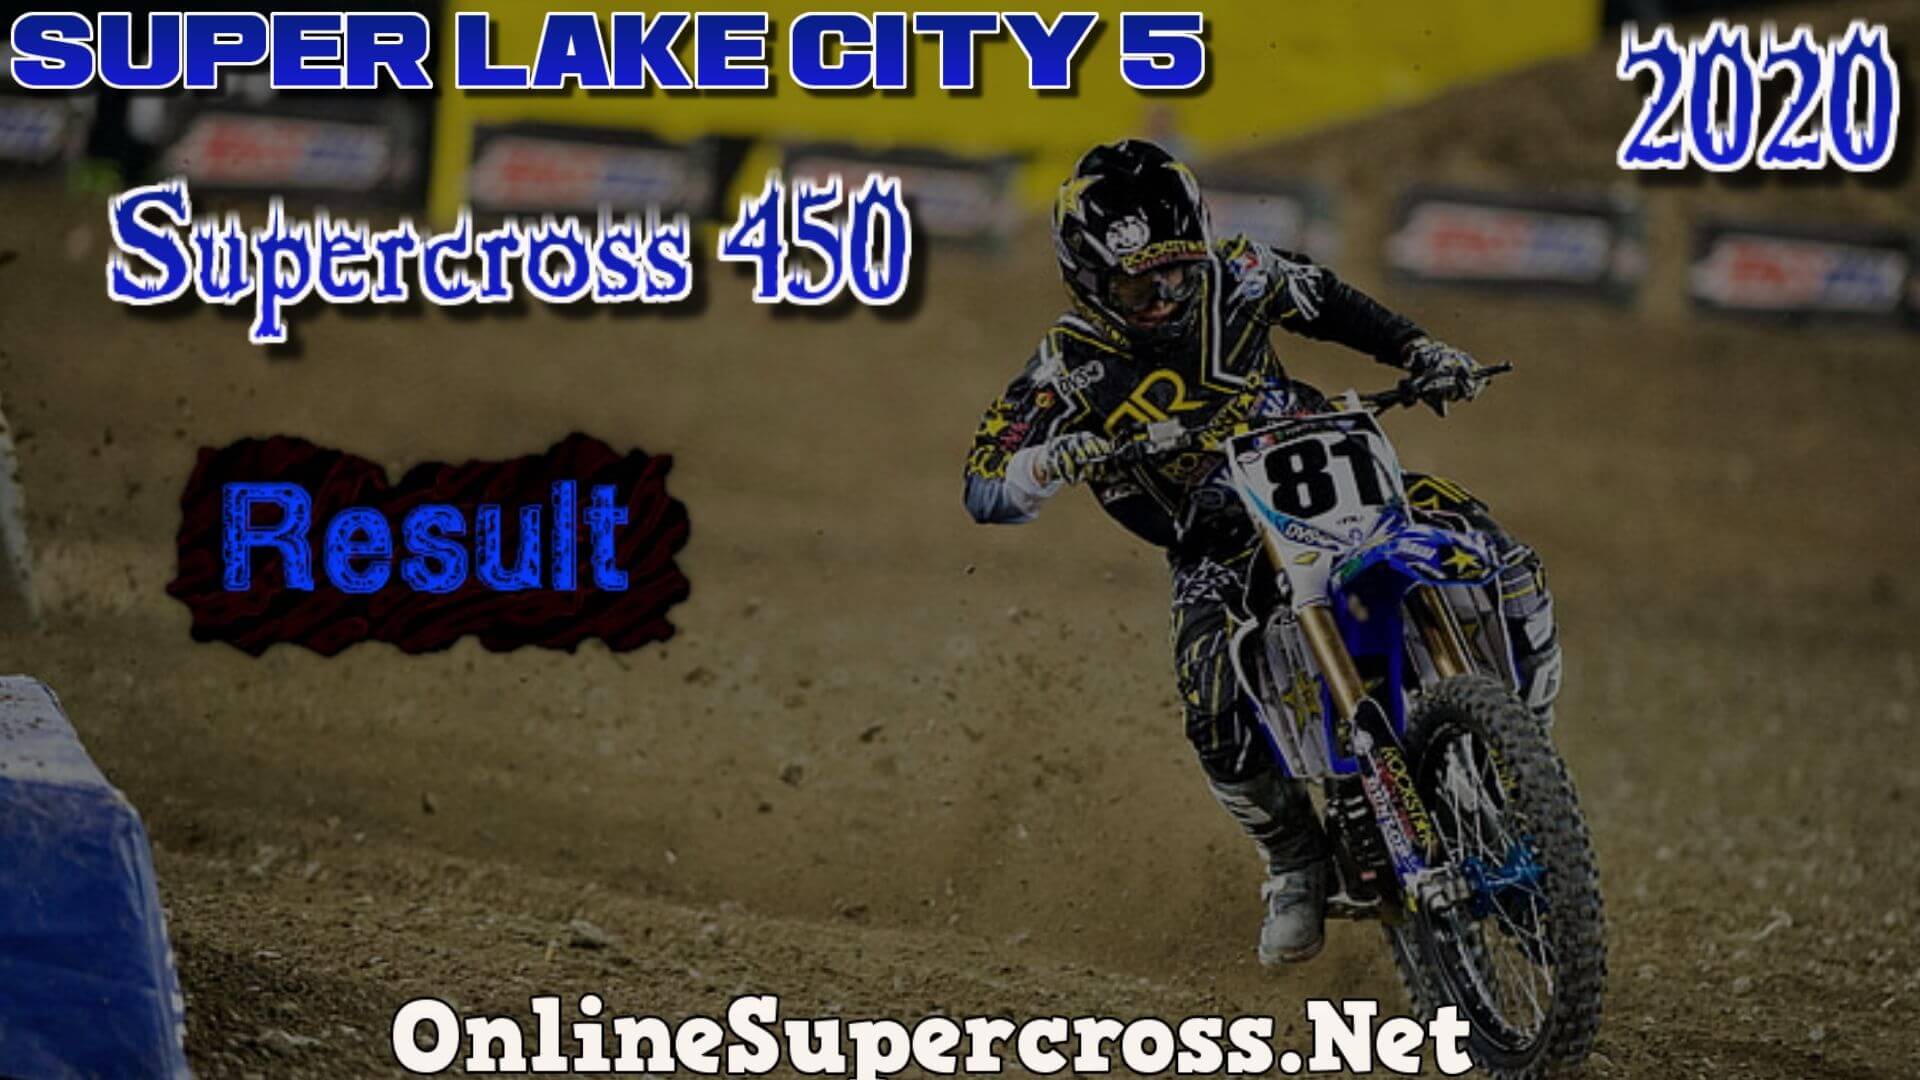 Super Lake City 5 Supercross 450 Result 2020